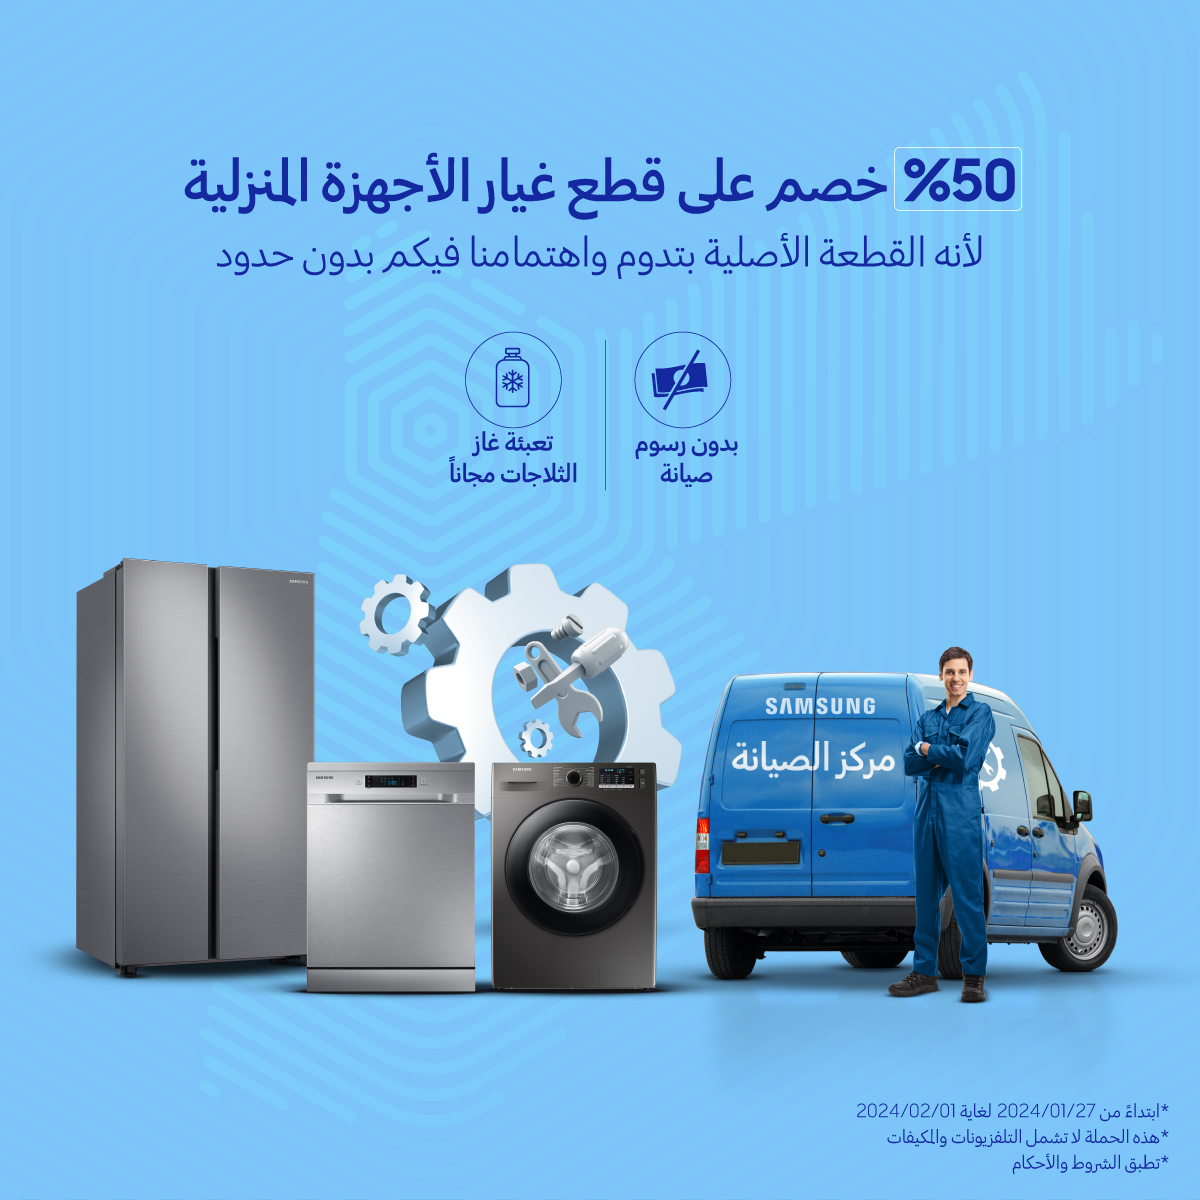 《سامسونج إلكترونيكس المشرق العربي》 تطلق حملة خصومات بنسبة 50% على قطع غيار الأجهزة المنزلية الرقمية